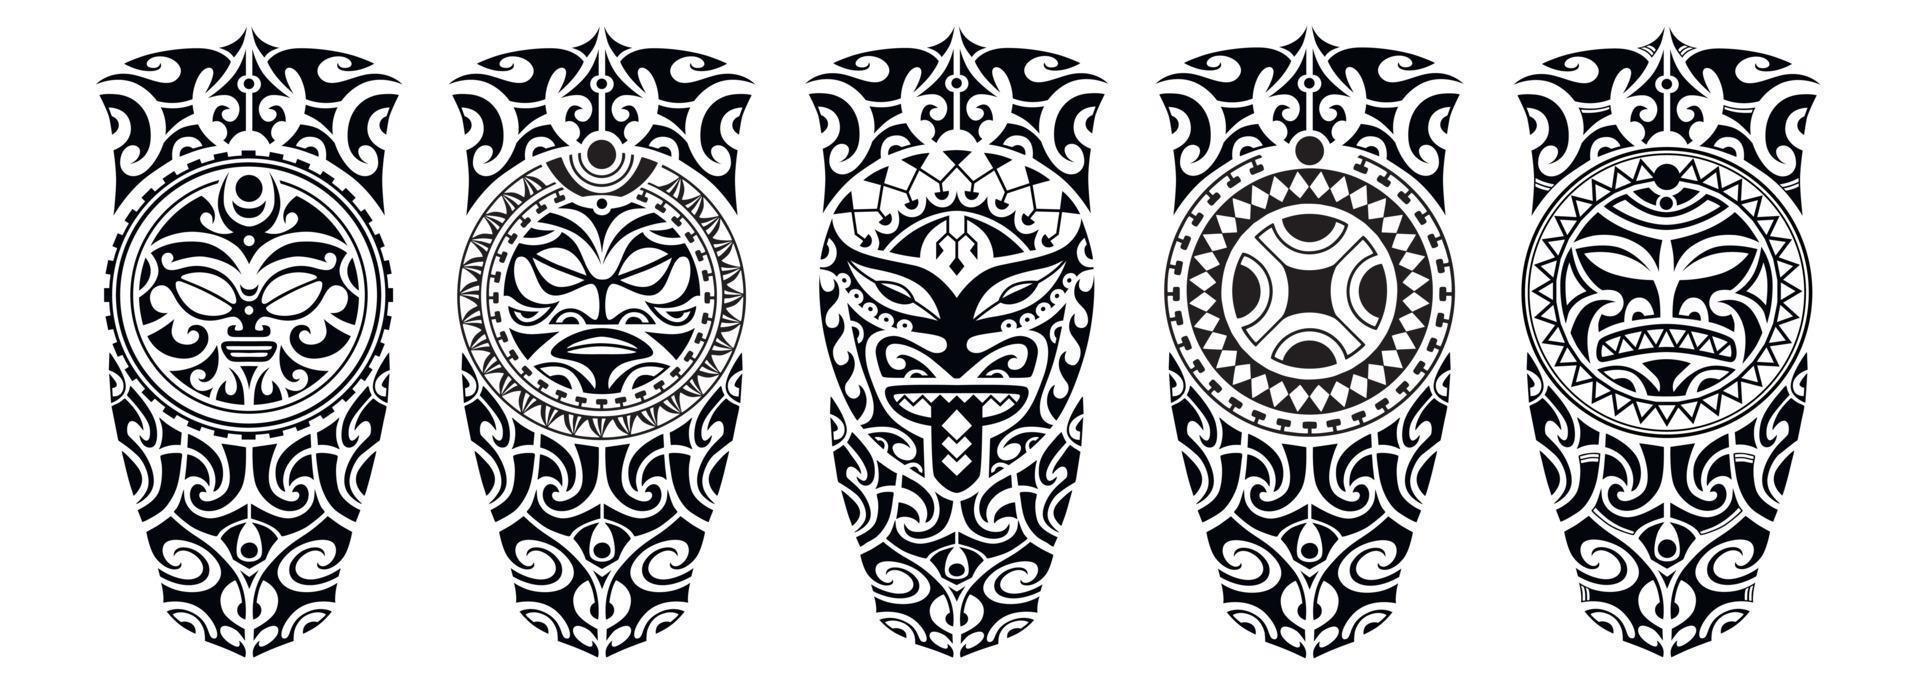 ensemble de croquis de tatouage de style maori pour la jambe ou l'épaule. vecteur